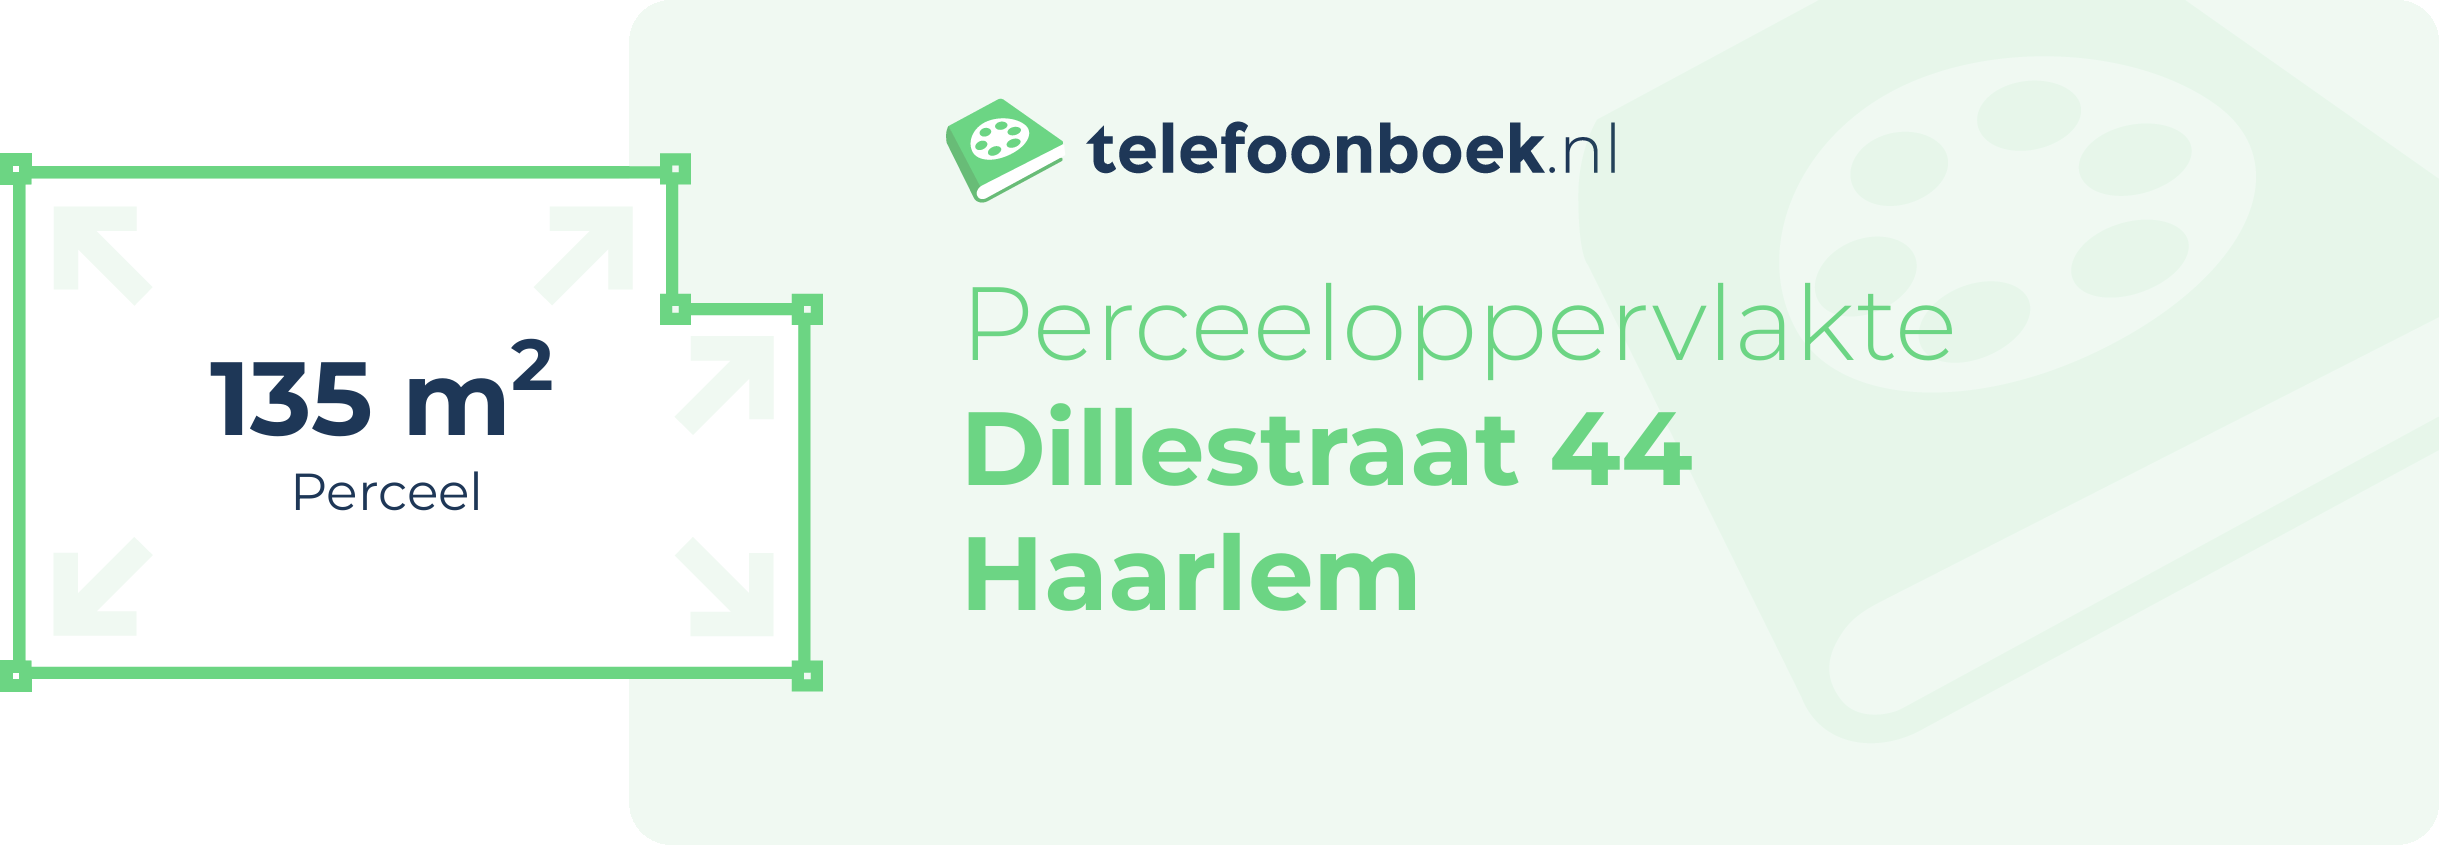 Perceeloppervlakte Dillestraat 44 Haarlem